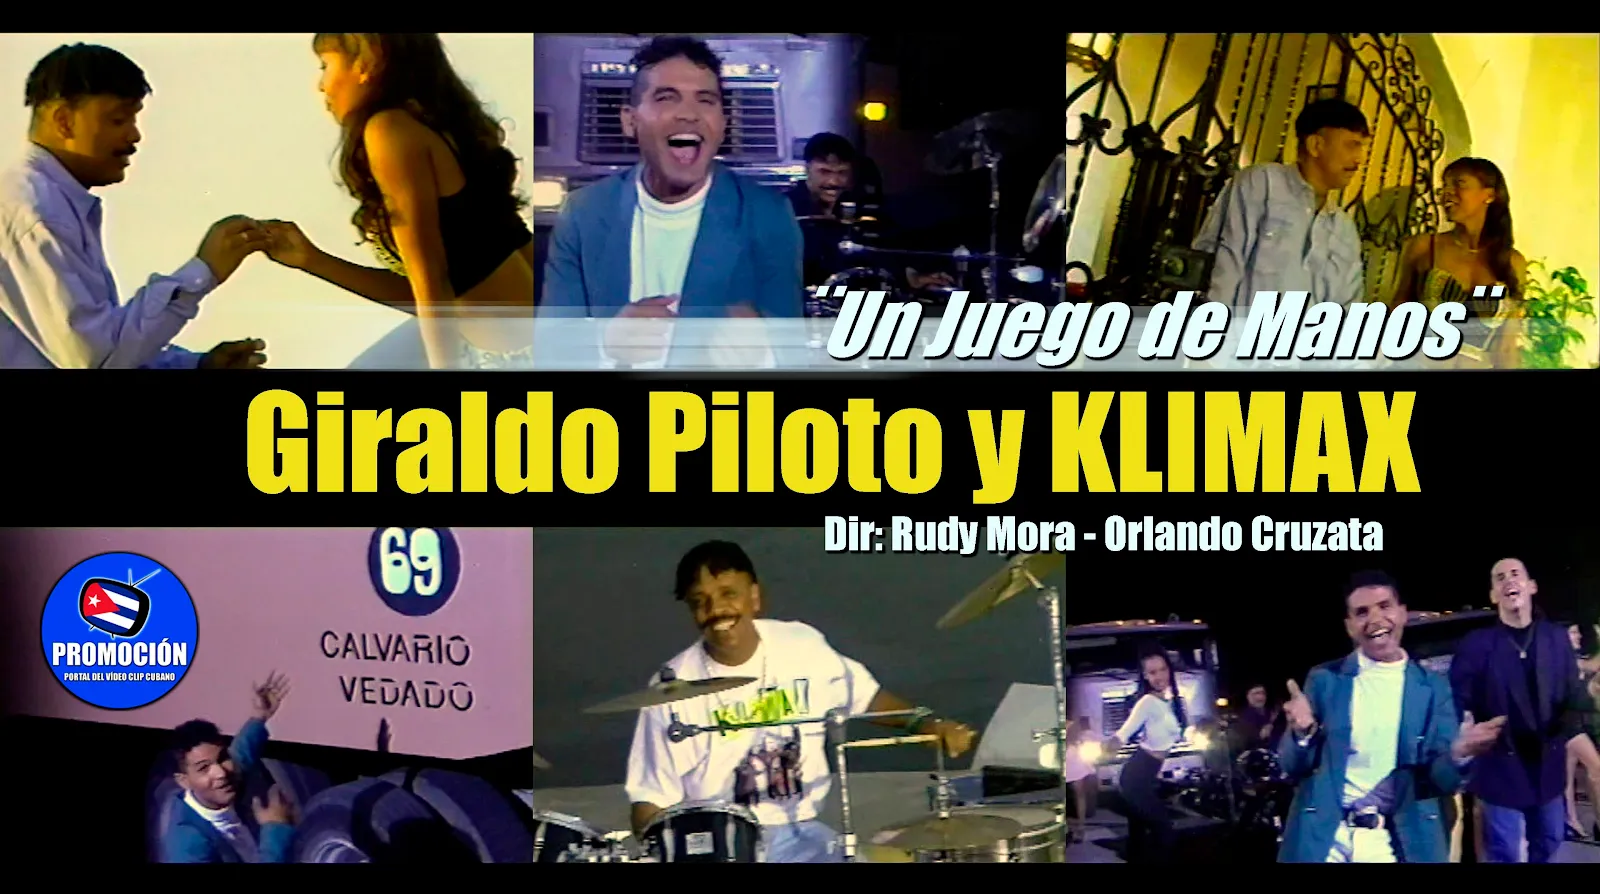 Giraldo Piloto y KLIMAX | Un Juego de Manos | Dirección: Rudy Mora - Orlando Cruzata | Videoclip | Música Popular Bailable Cubana | Artistas Cubanos | Canción | CUBA